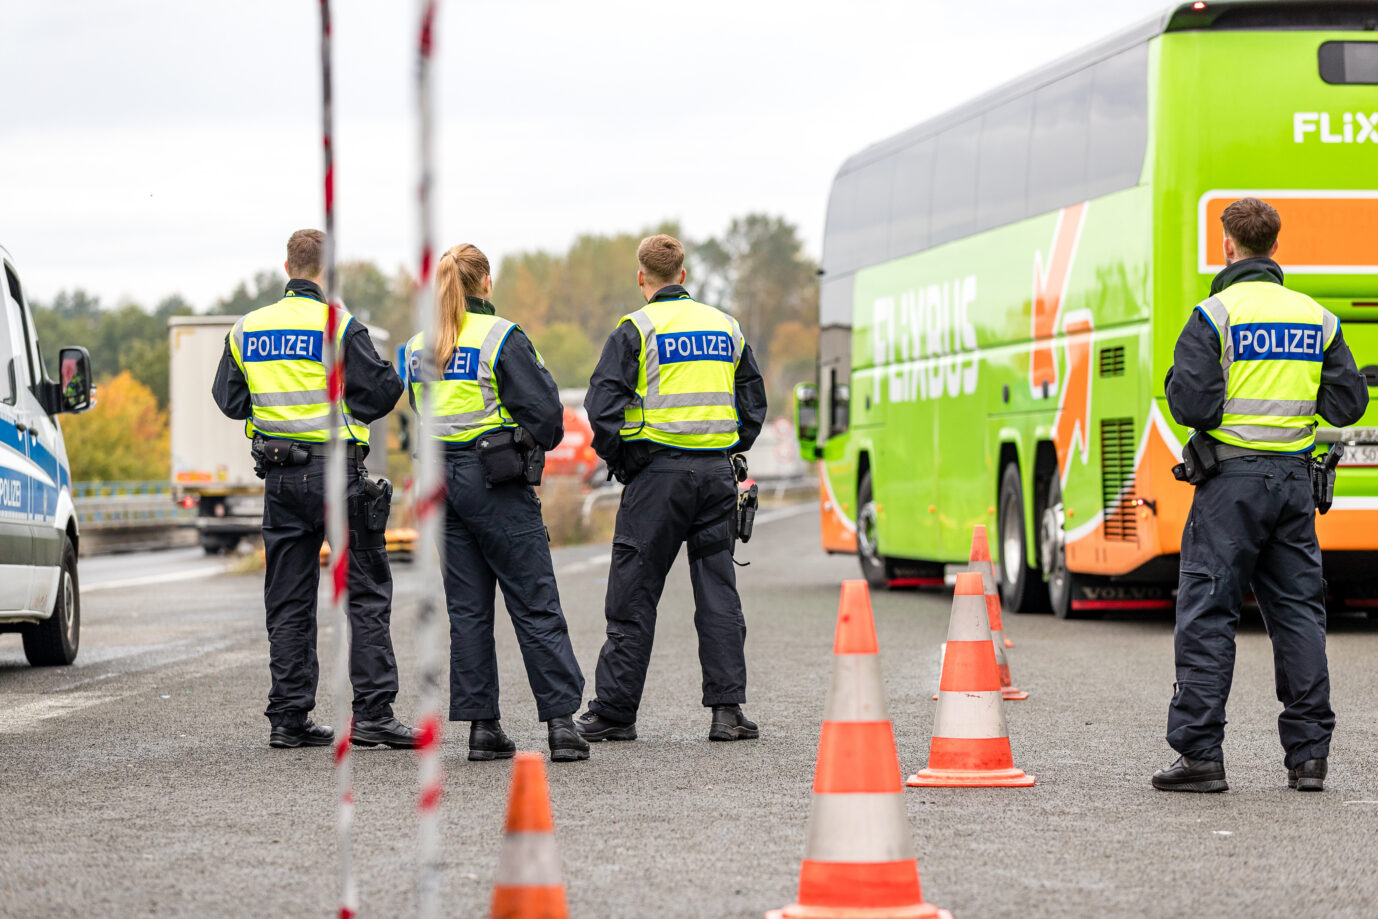 Auf dem Foto befindet sich eine Grenzkontrolle durch die Bundespolizei. Während einer Untersuchung fand die Polizei zwei abgelehnte Asylbewerber im Bus. (Symbolbild)